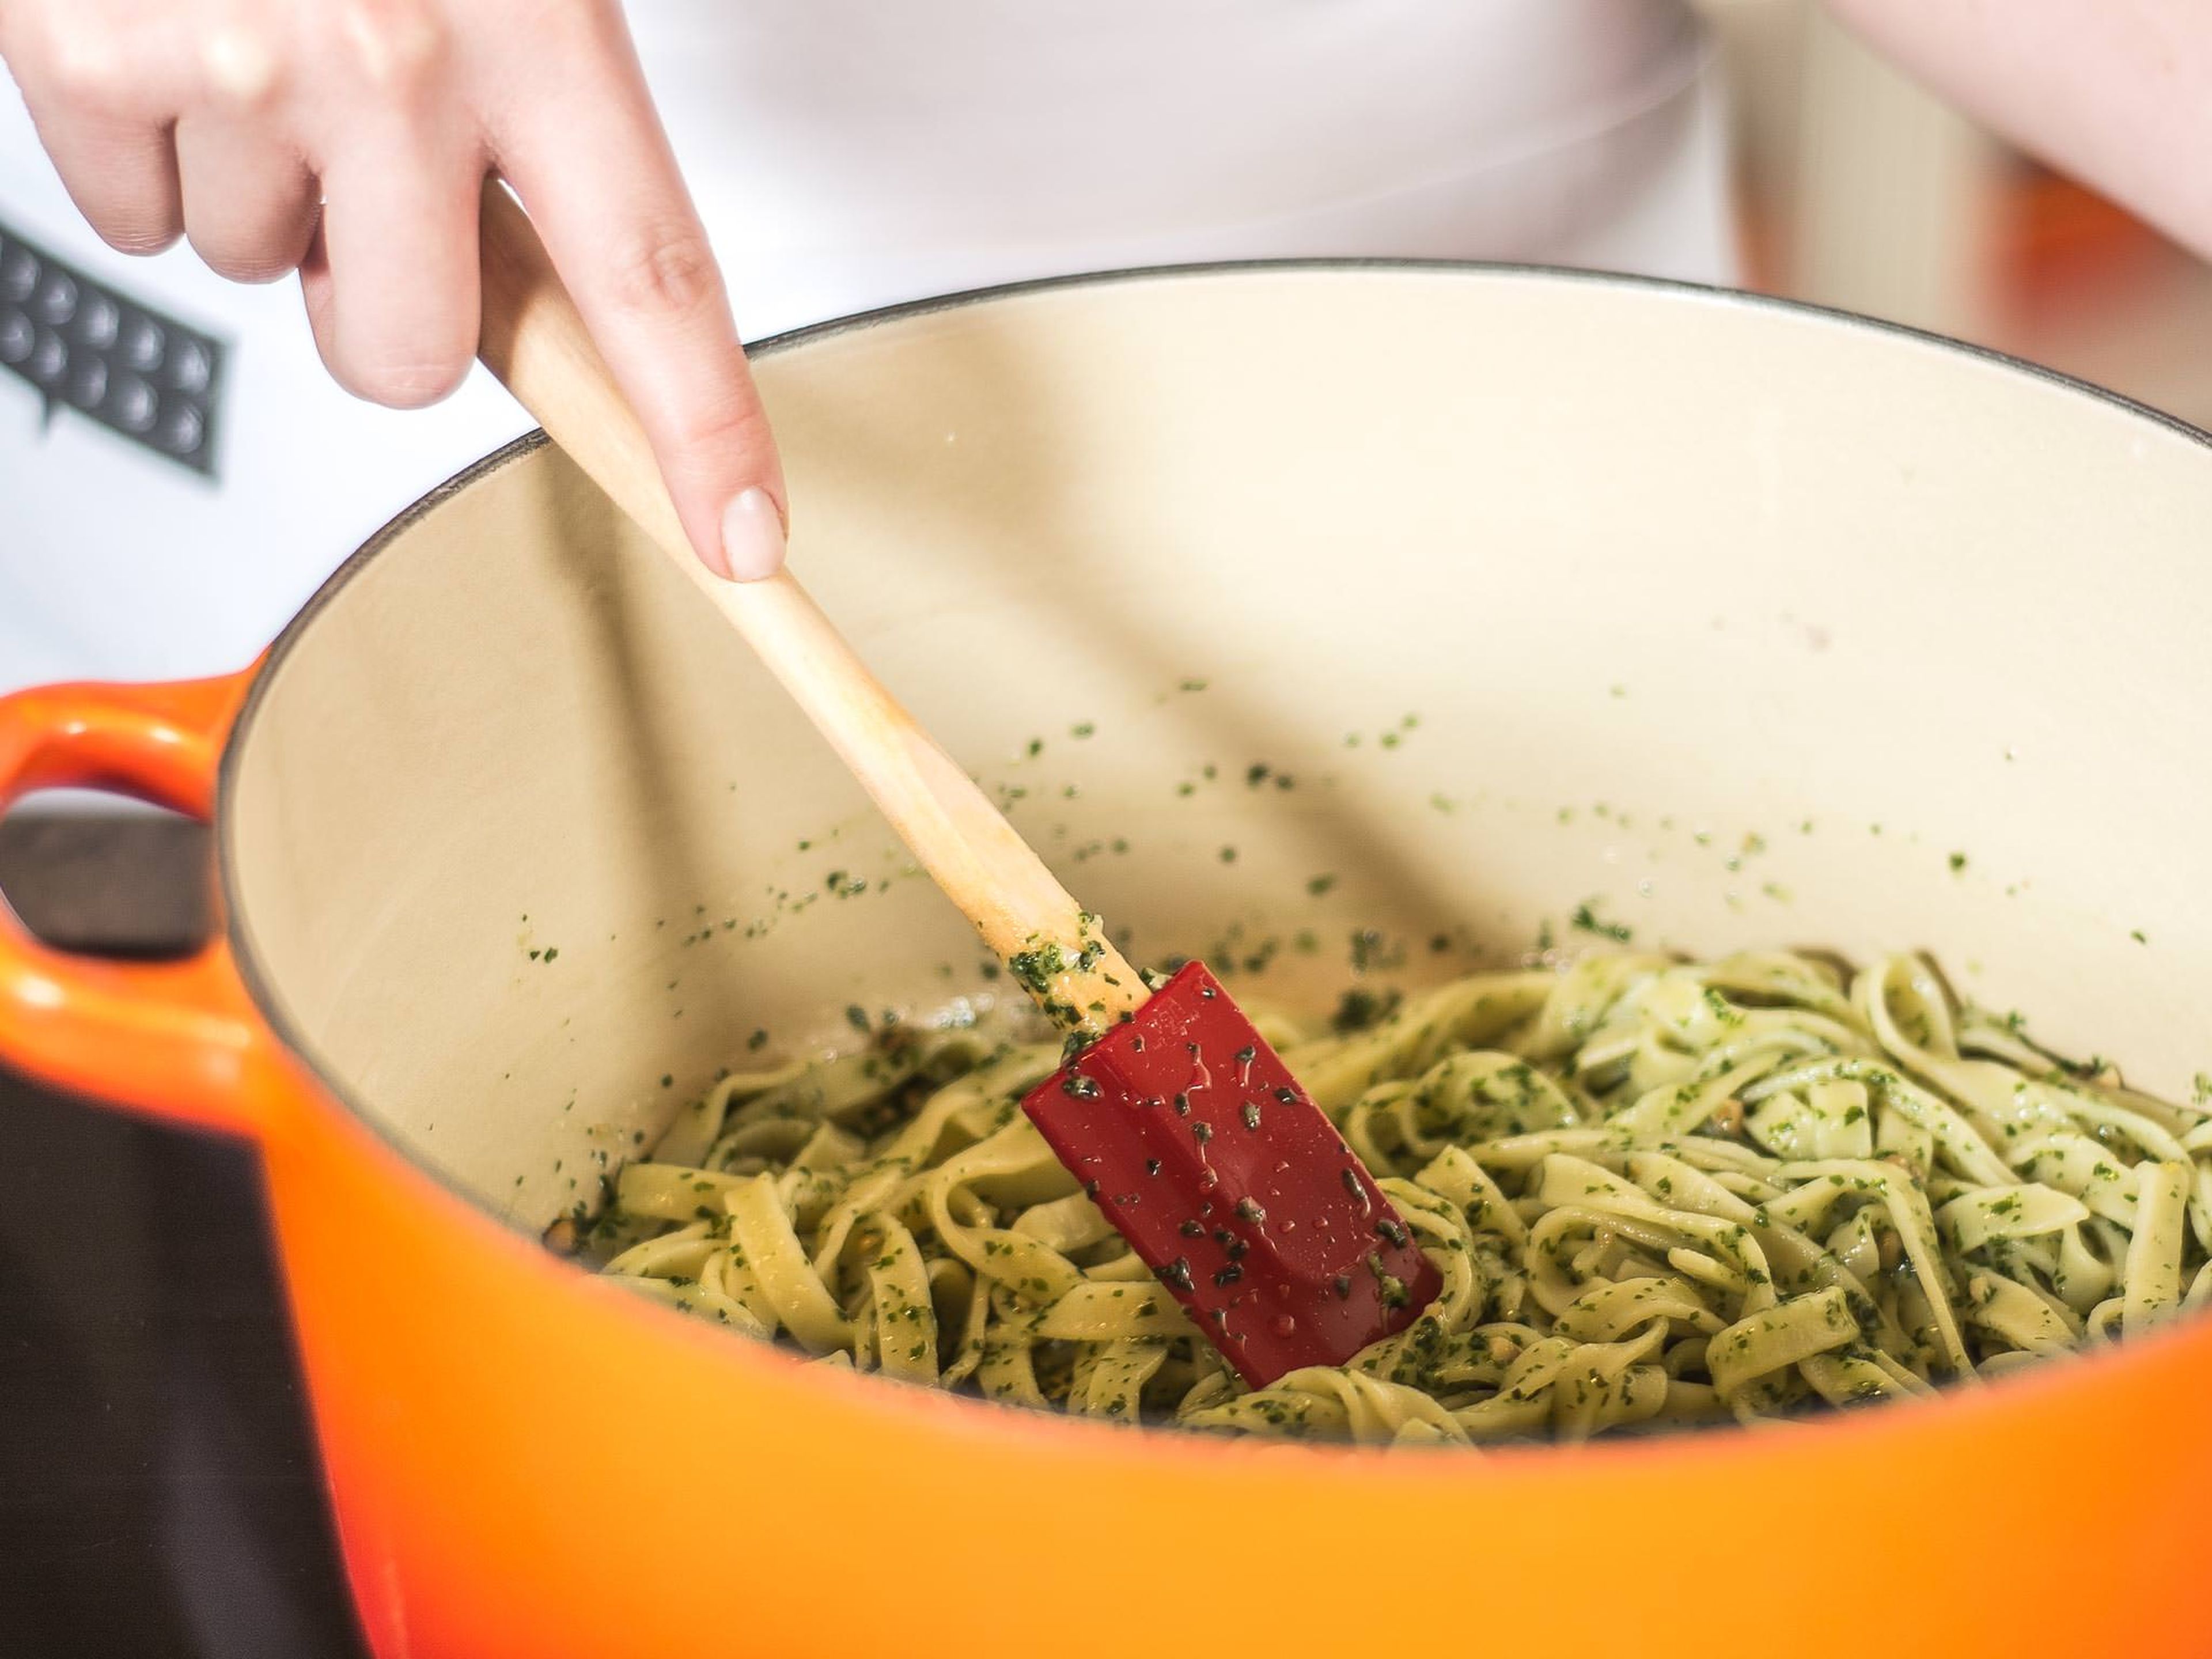 Die Tagliatelle anschließend im Pesto schwenken. Hierfür gern den zuvor genutzten Nudeltopf verwenden. Zum Servieren den geschnittenen Bresaola auf der Pasta verteilen.